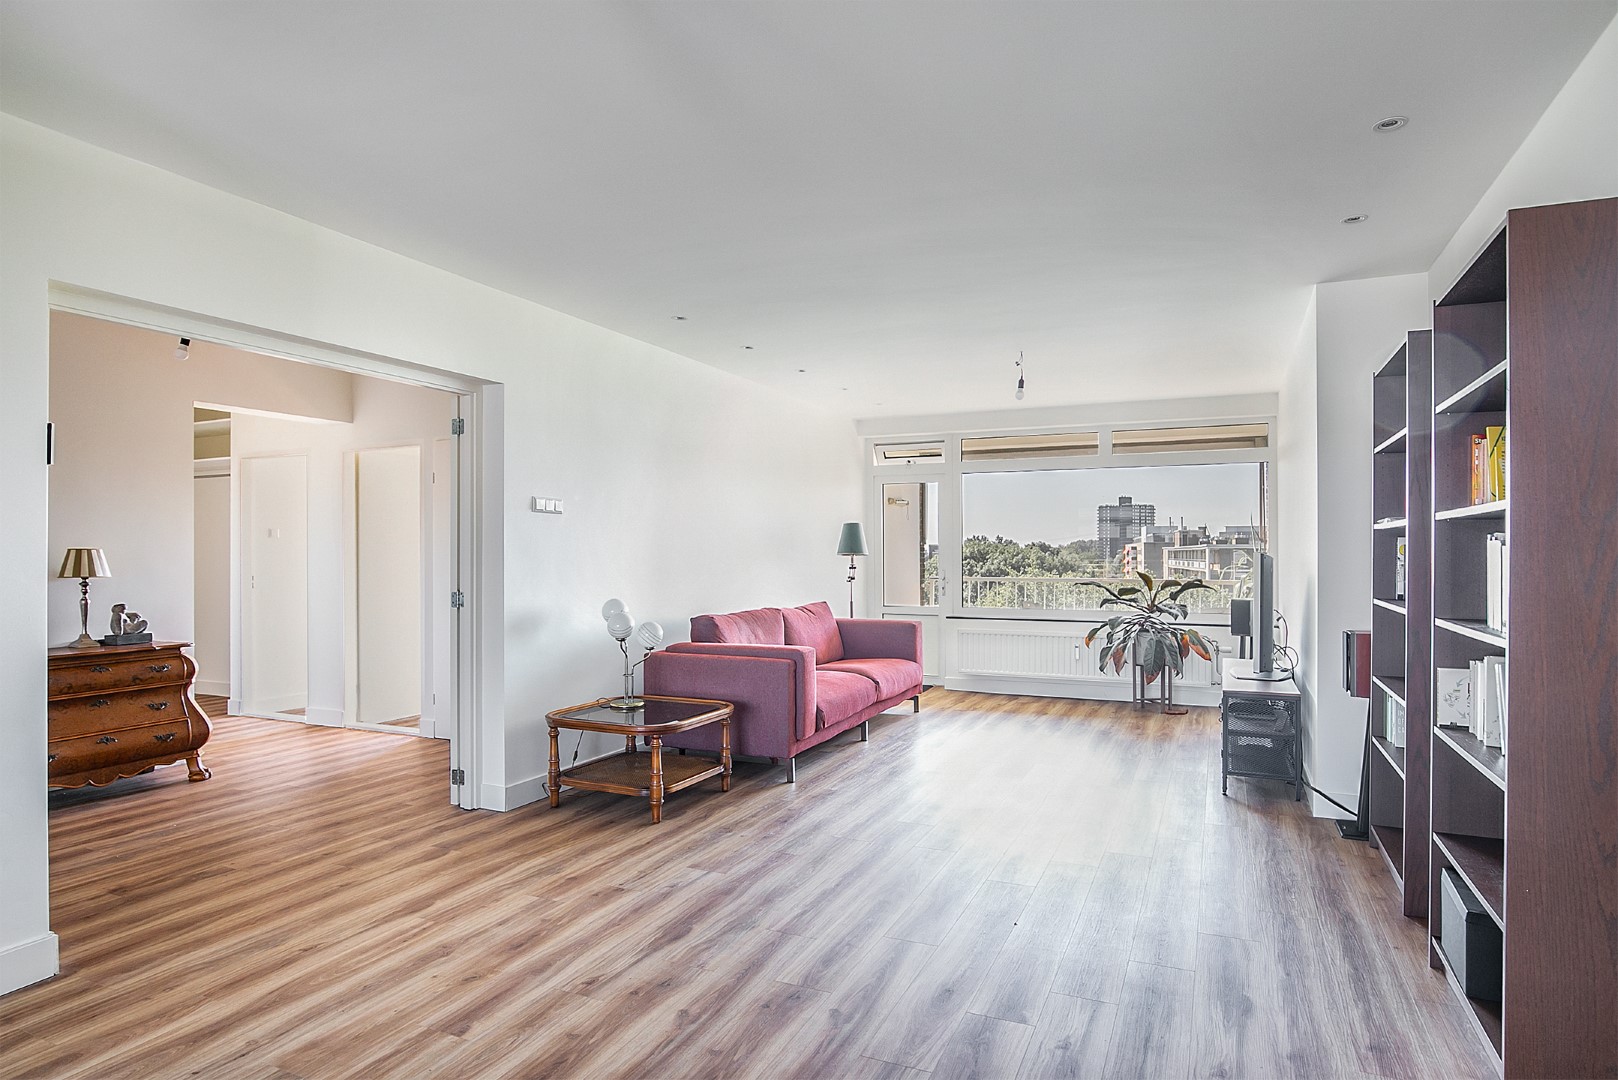 Werkelijk een schitterend 3 kamer appartement met een prachtig uitzicht, verhuizen zonder de te klussen! In 2020 volledig gerenoveerd in Mariahoeve.